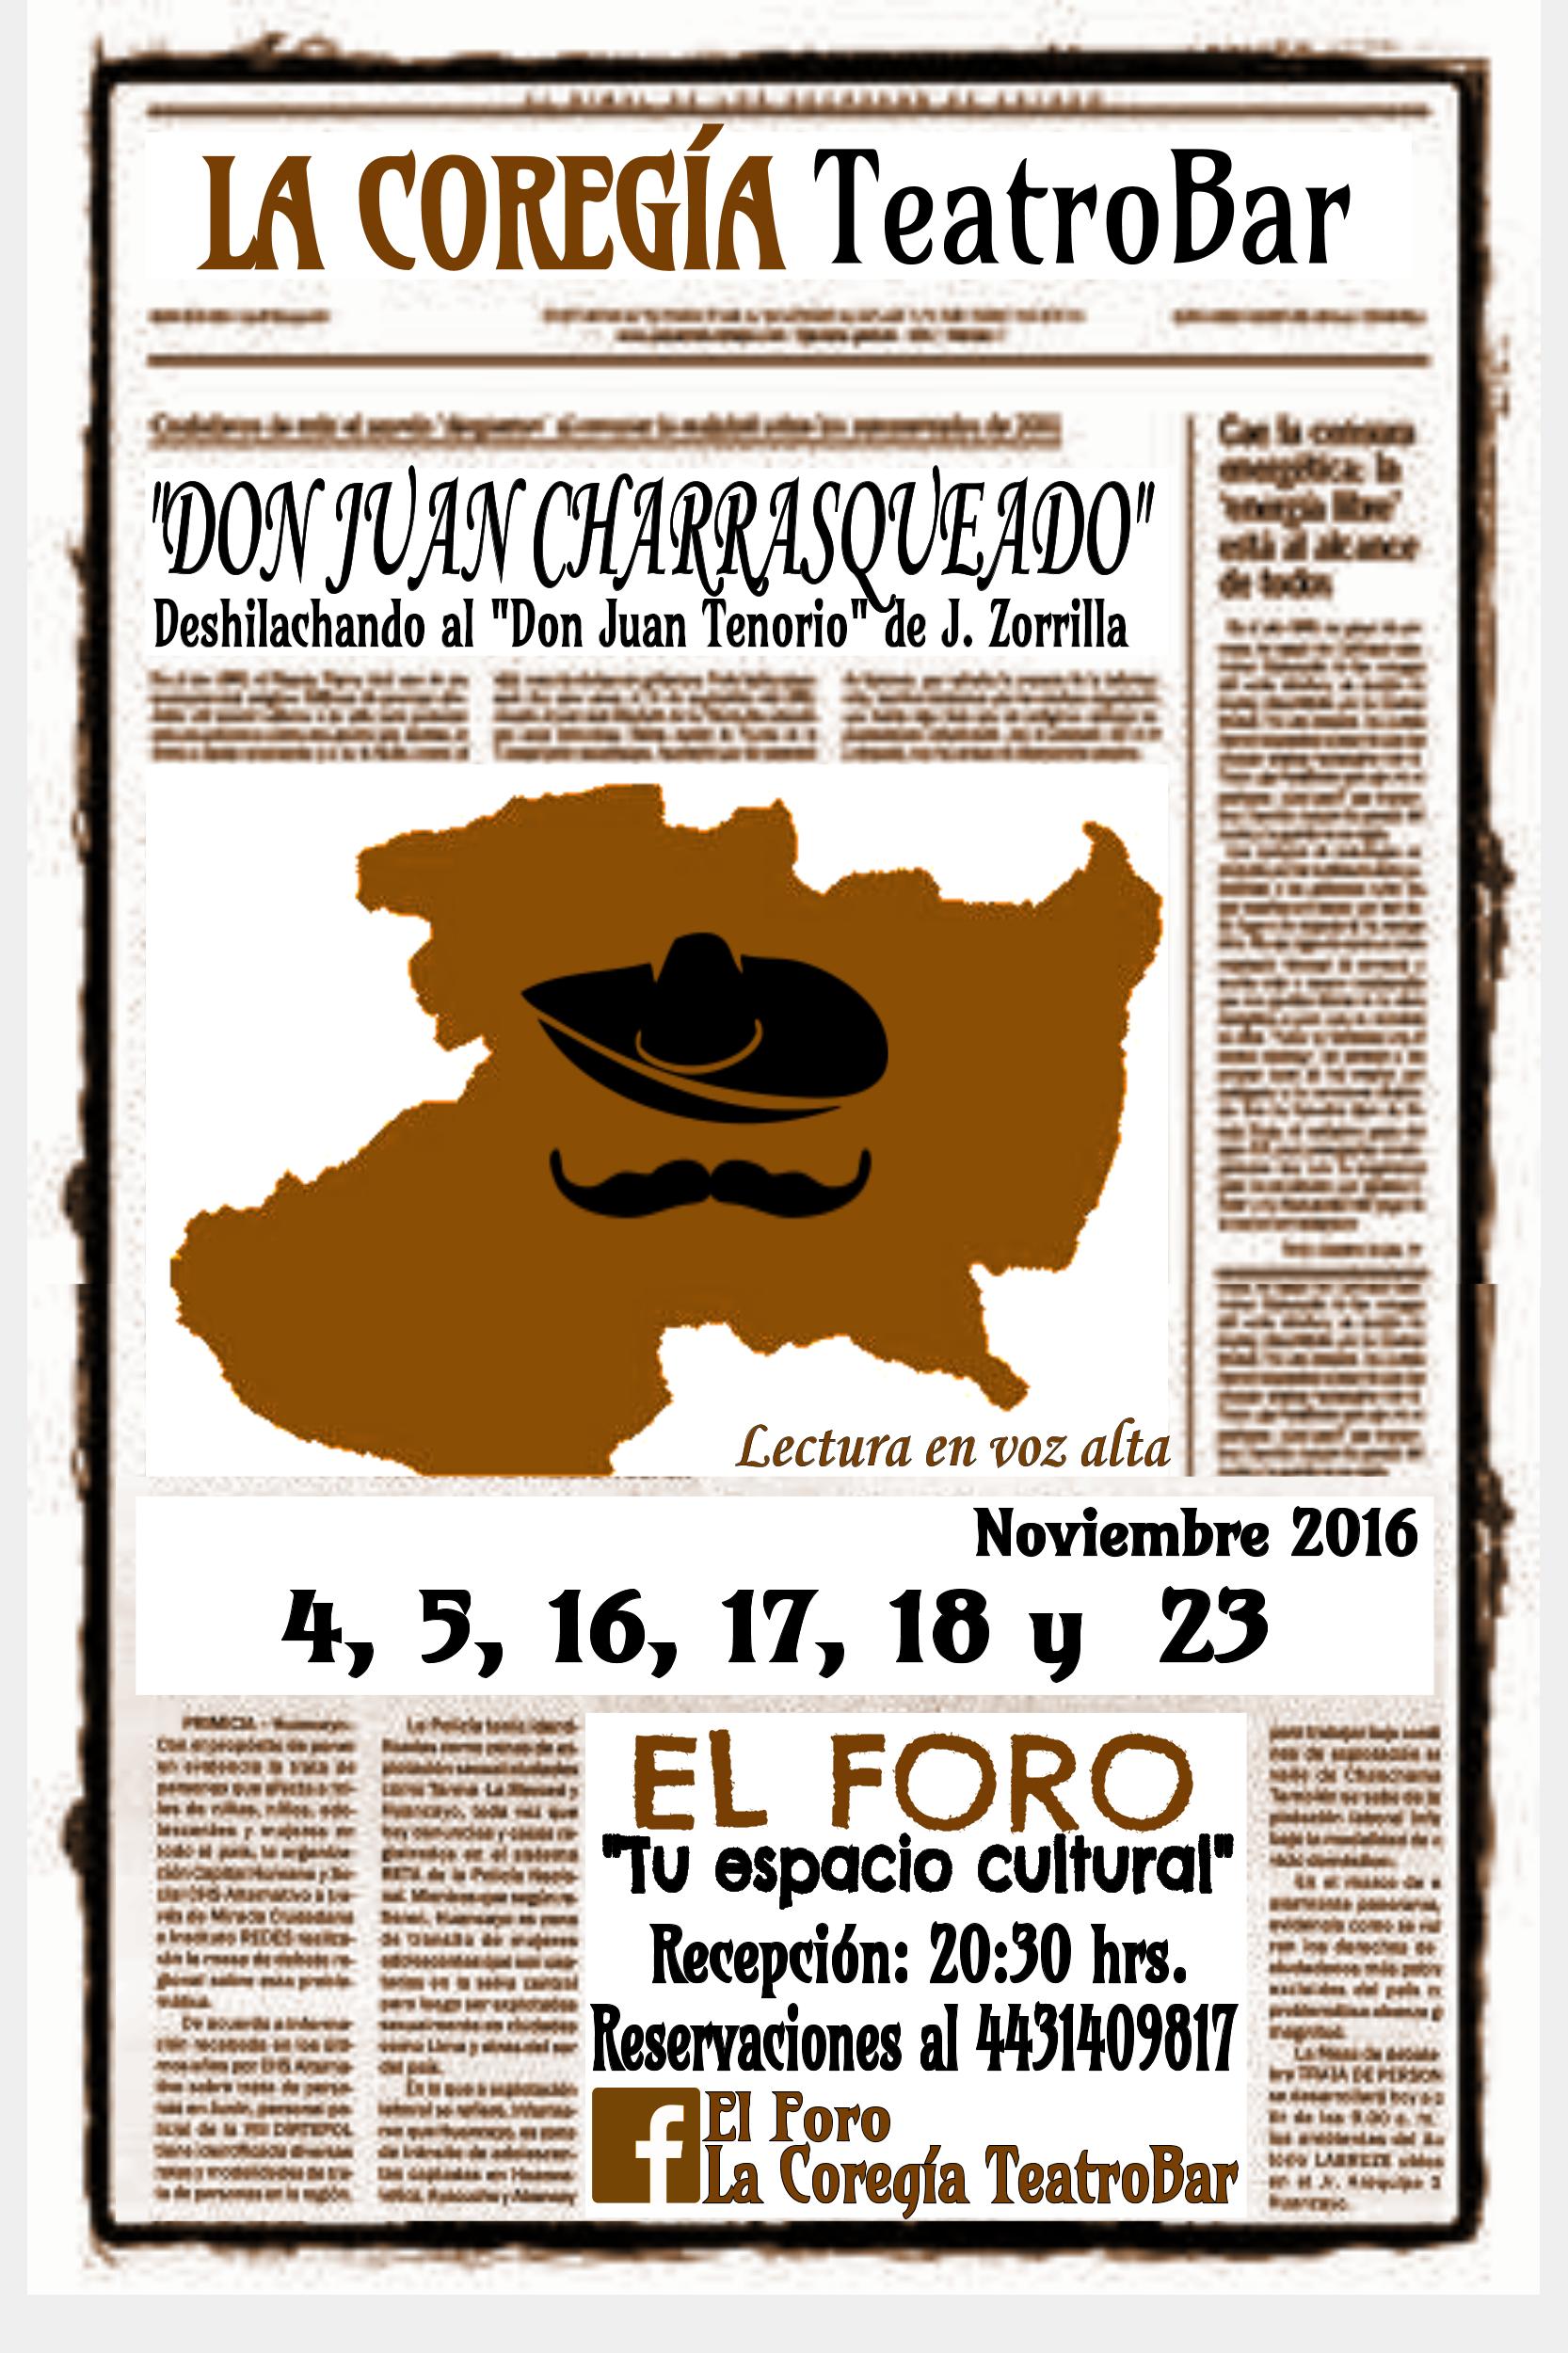 "Don Juan Charrasqueado" Deshilachando al "Don Juan Tenorio" de J. Zorrila